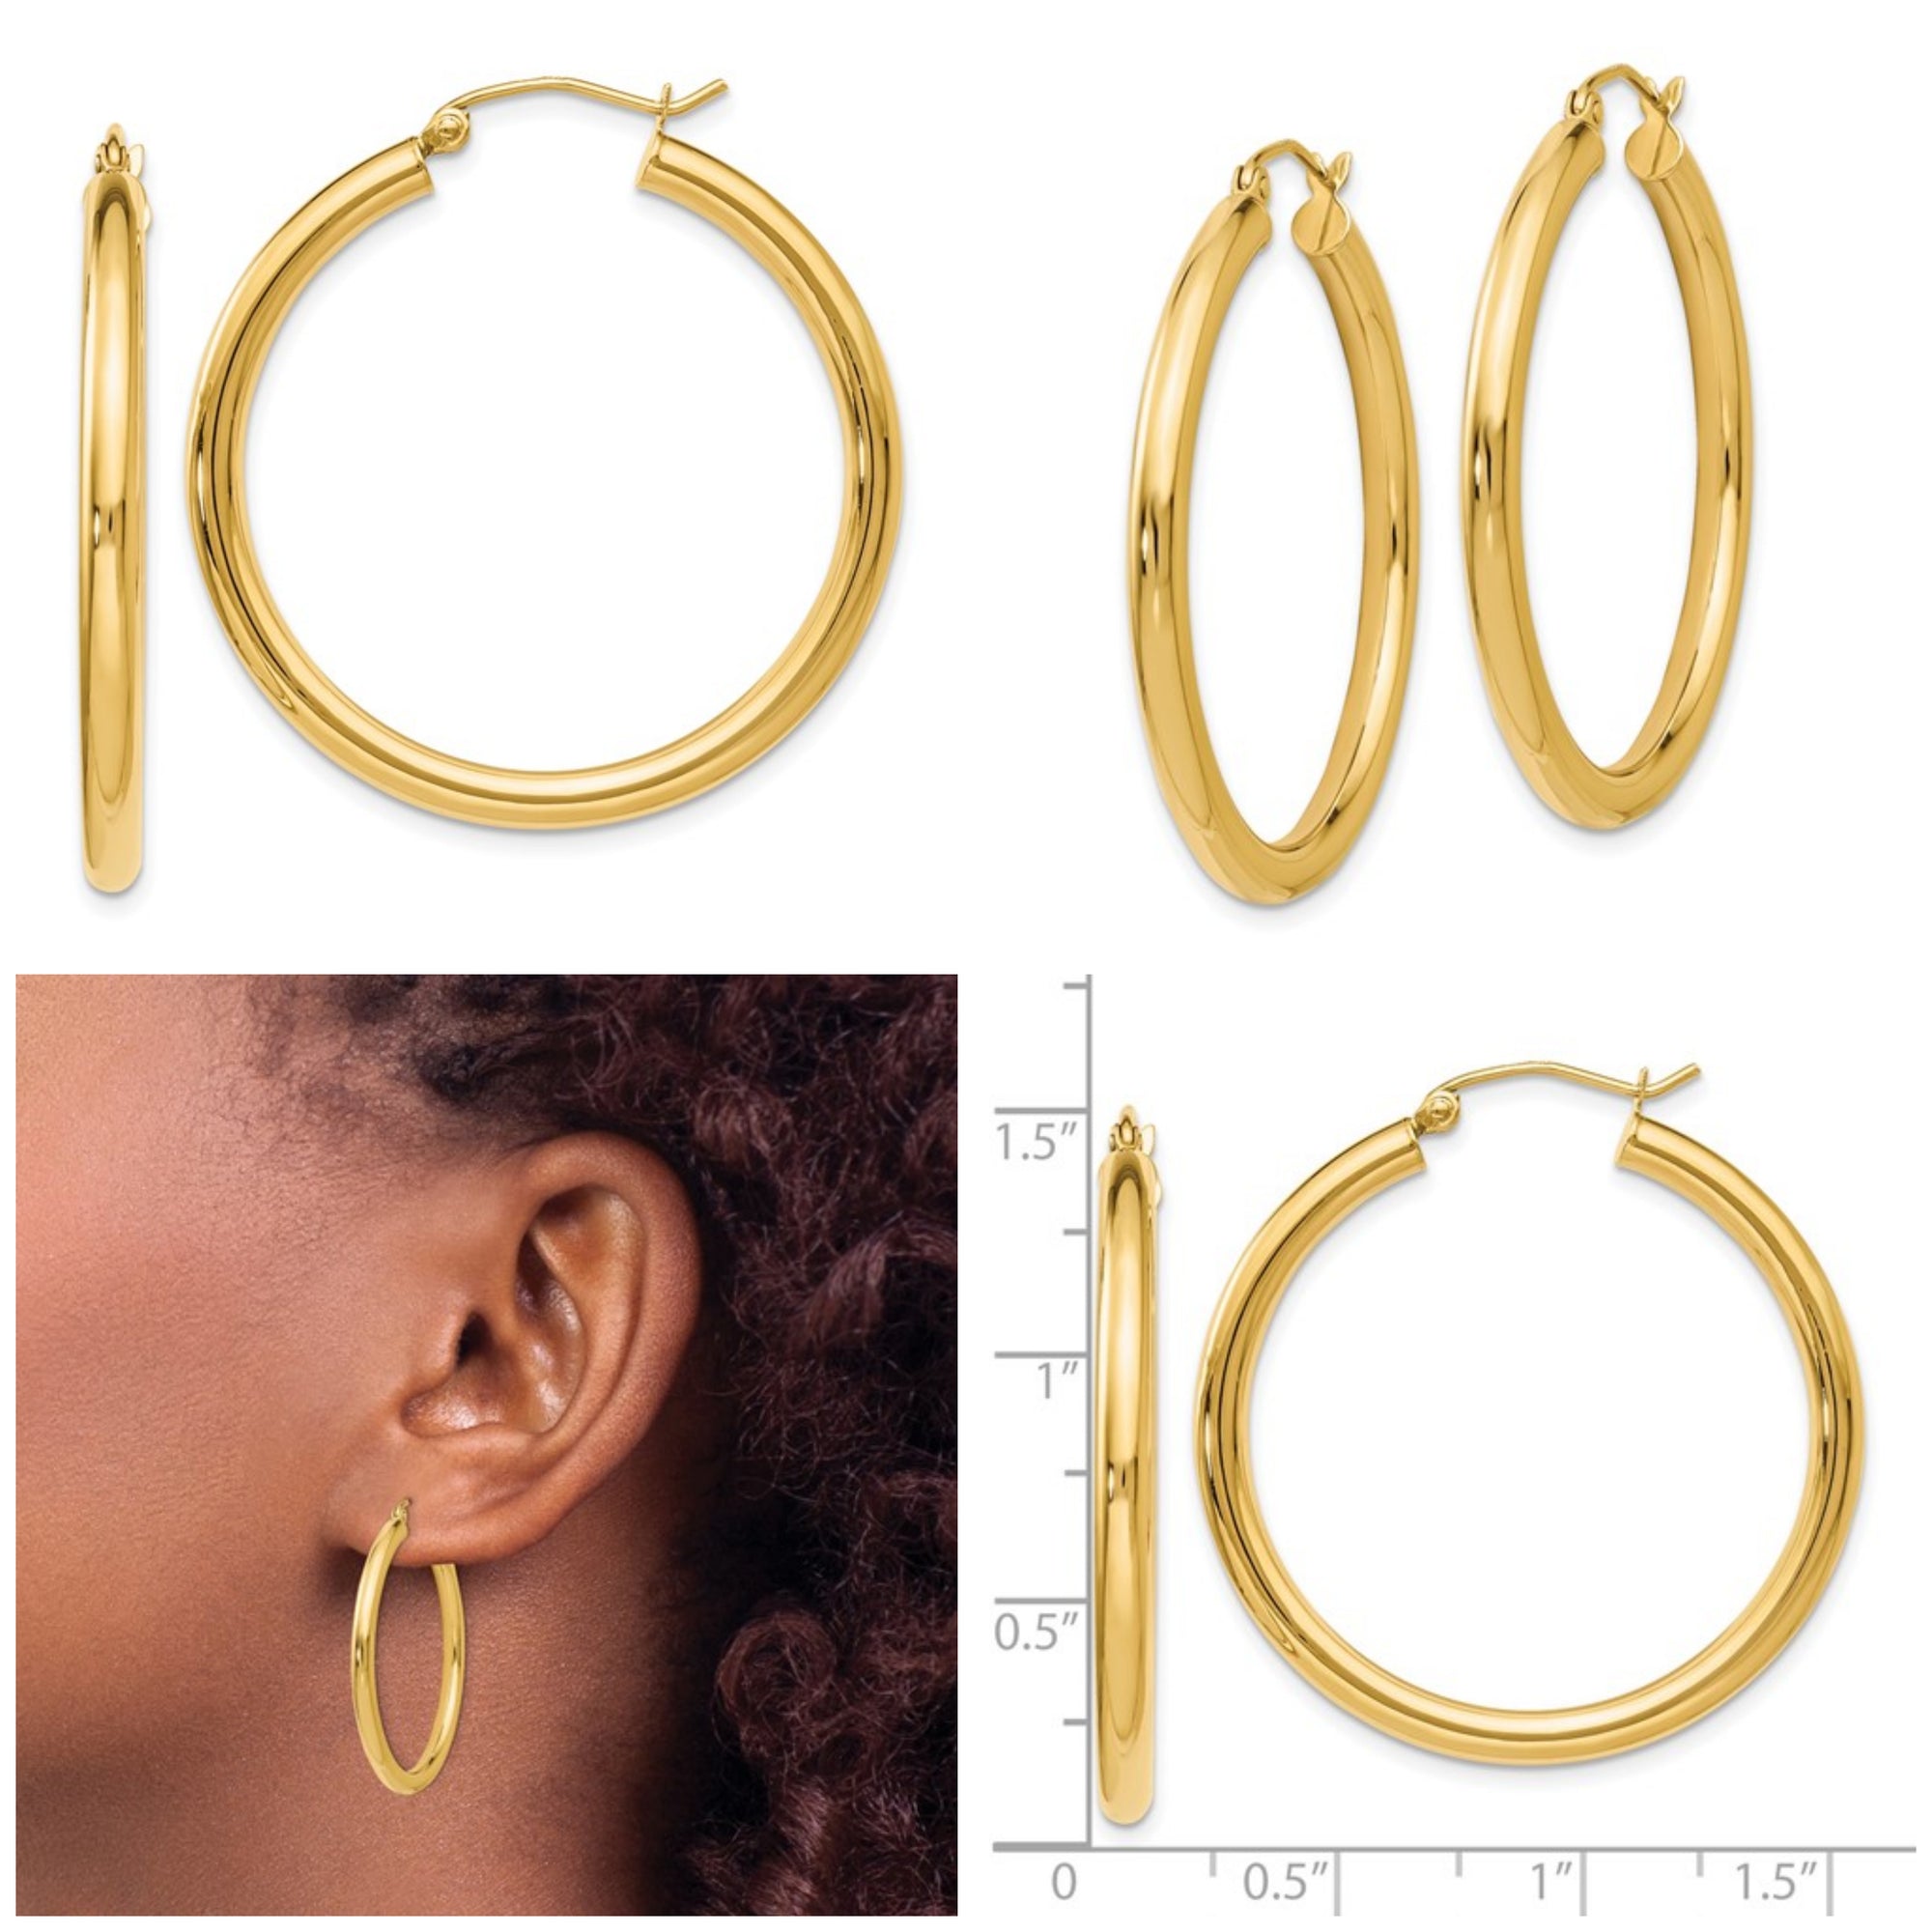 Leslie's 14K Polished 3mm Hoop Earrings